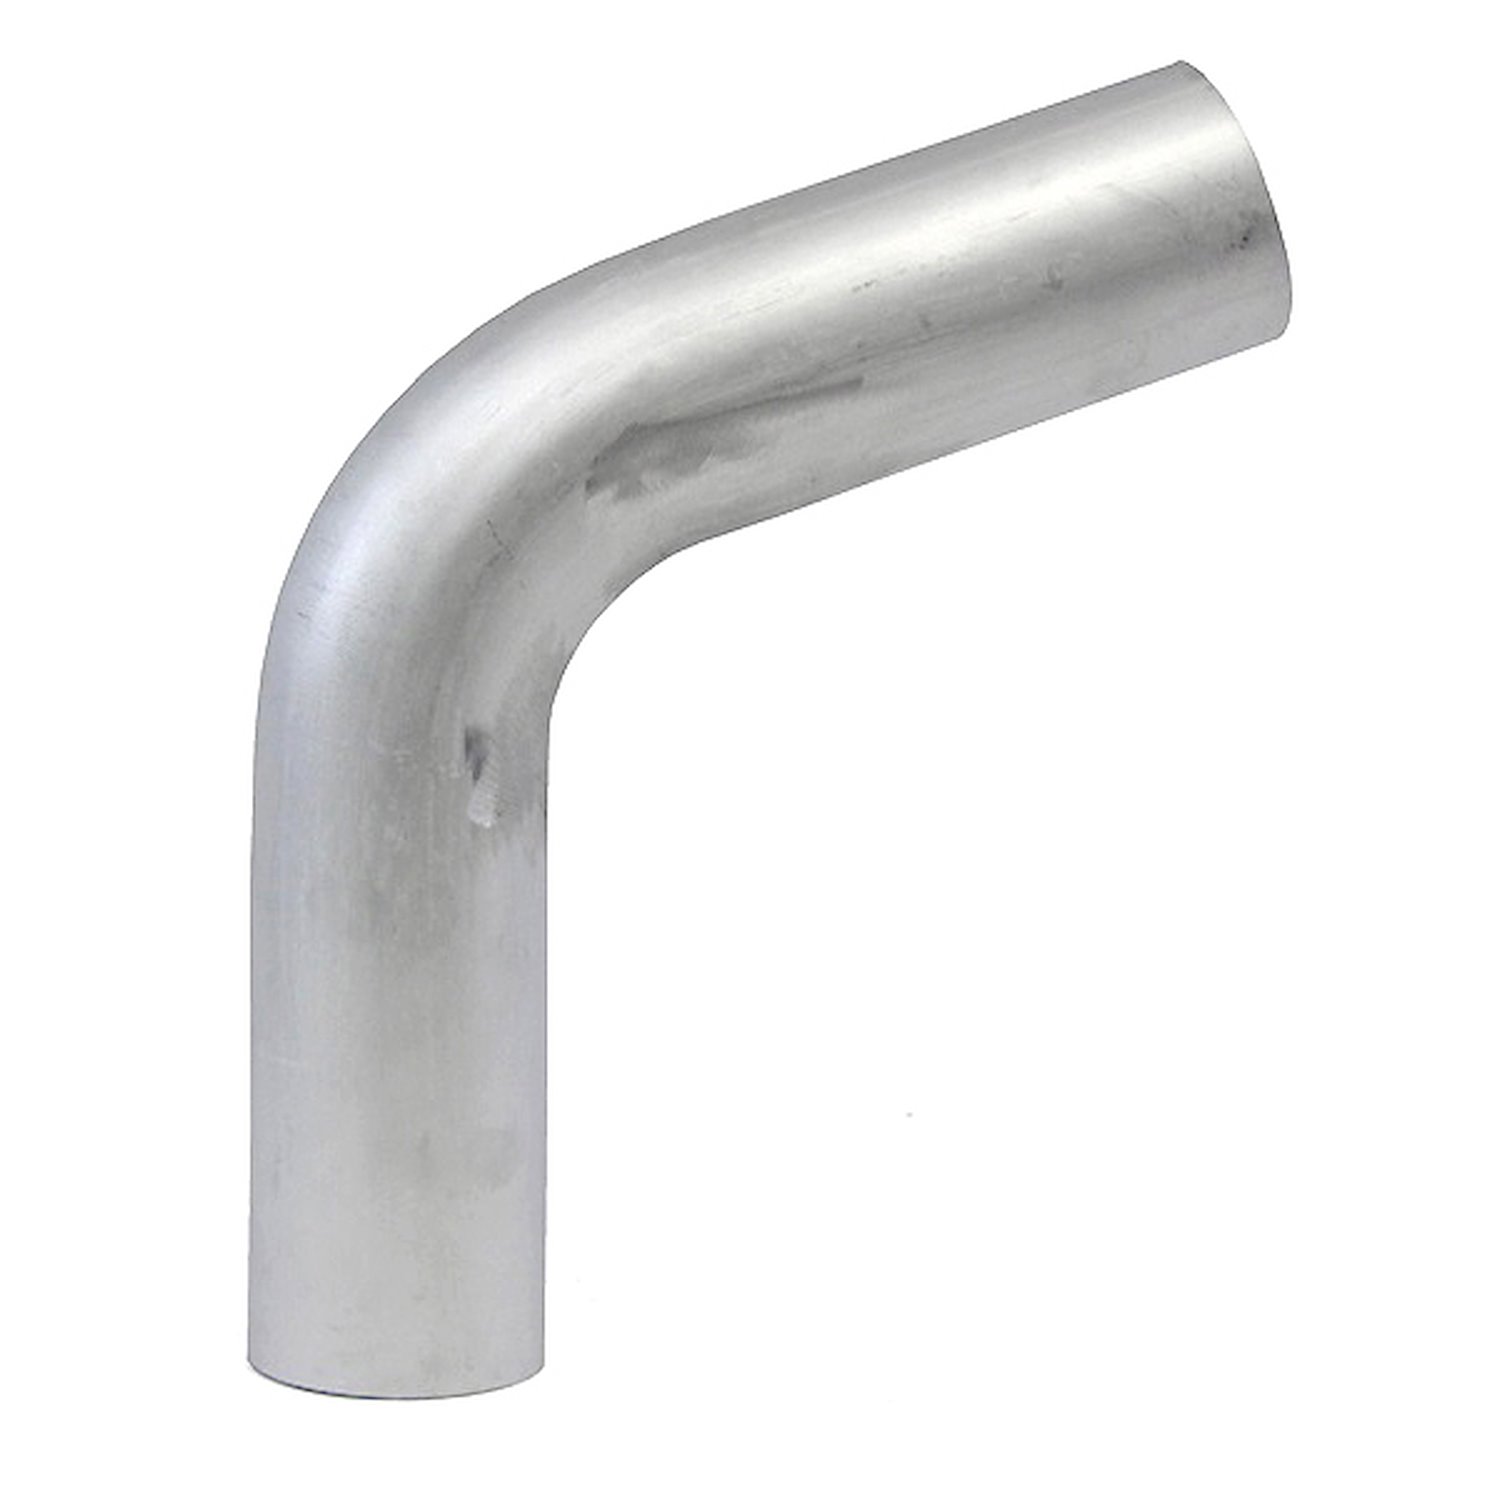 AT70-300-CLR-475 Aluminum Elbow Tube, 6061 Aluminum, 70-Degree Bend Elbow Tubing, 3 in. OD, Large Radius, 4-3/4 in. CLR